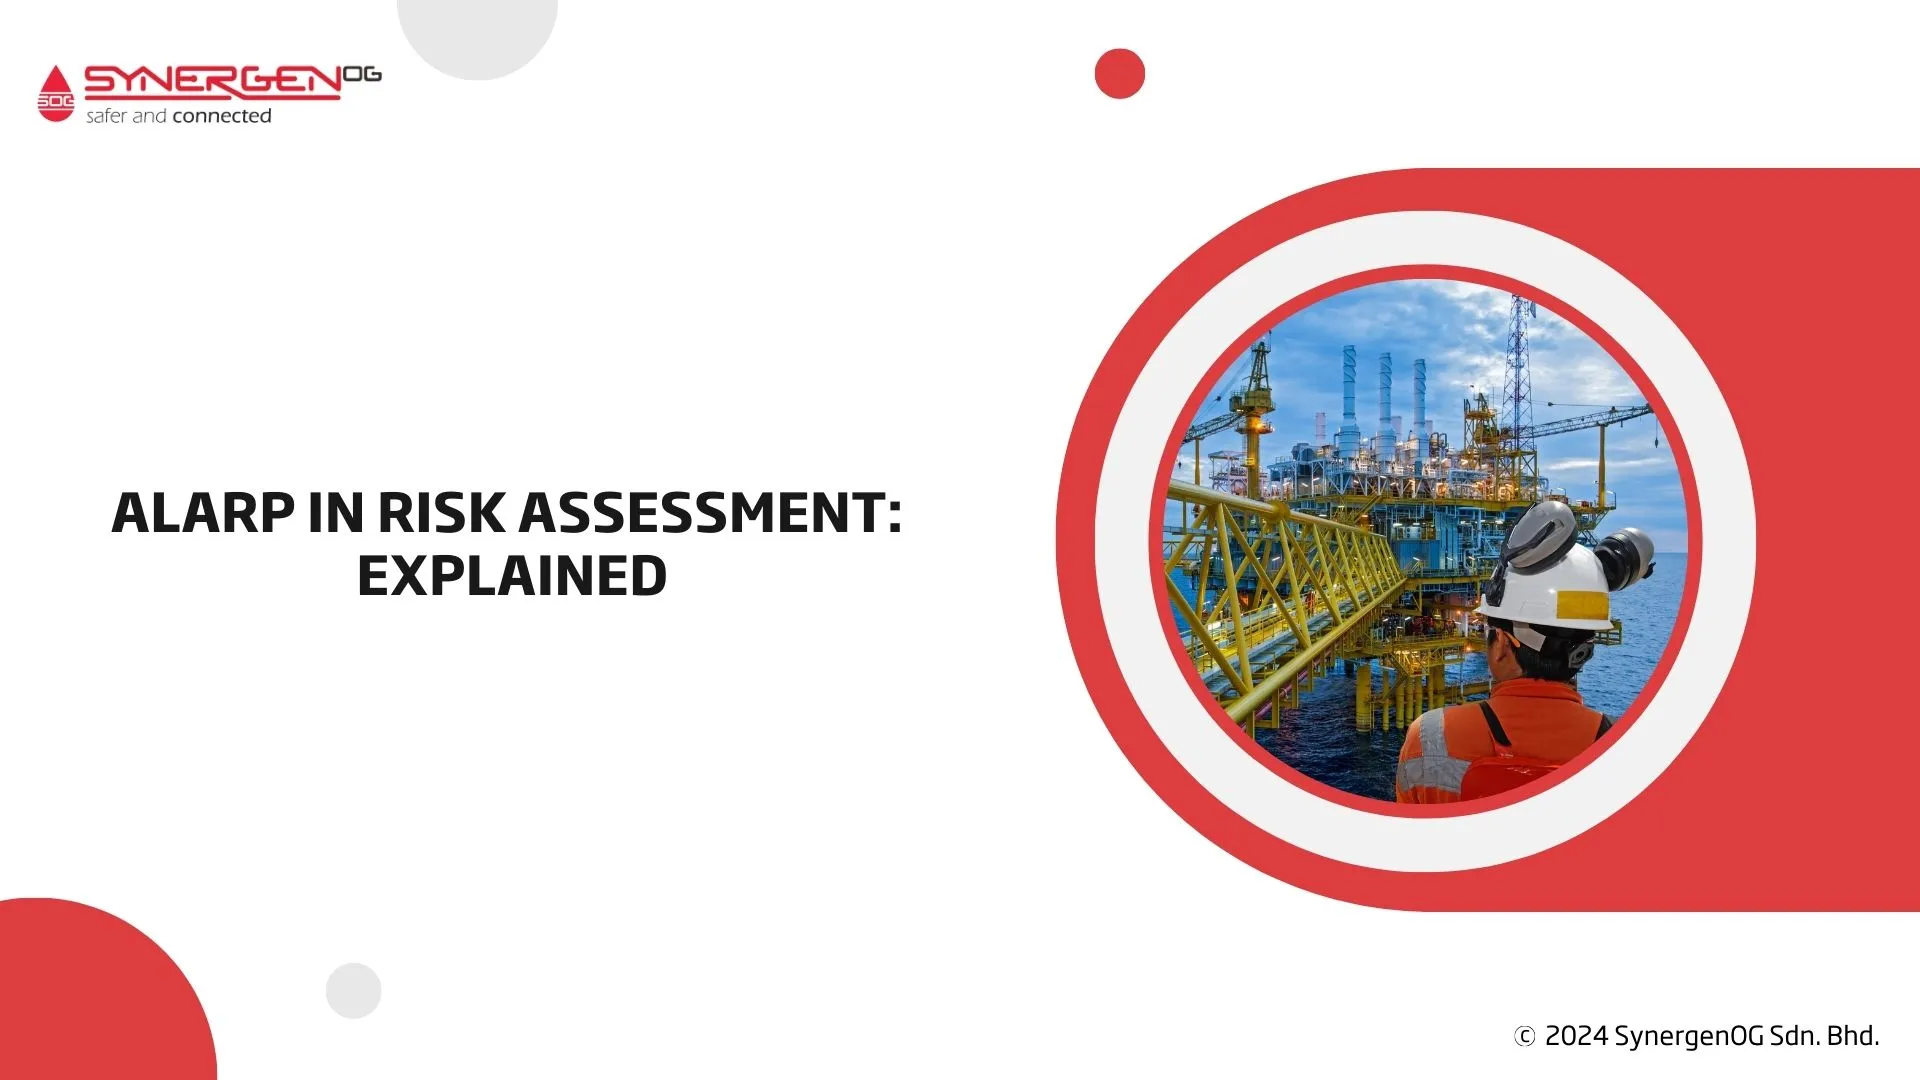 ALARP in risk assessment explained